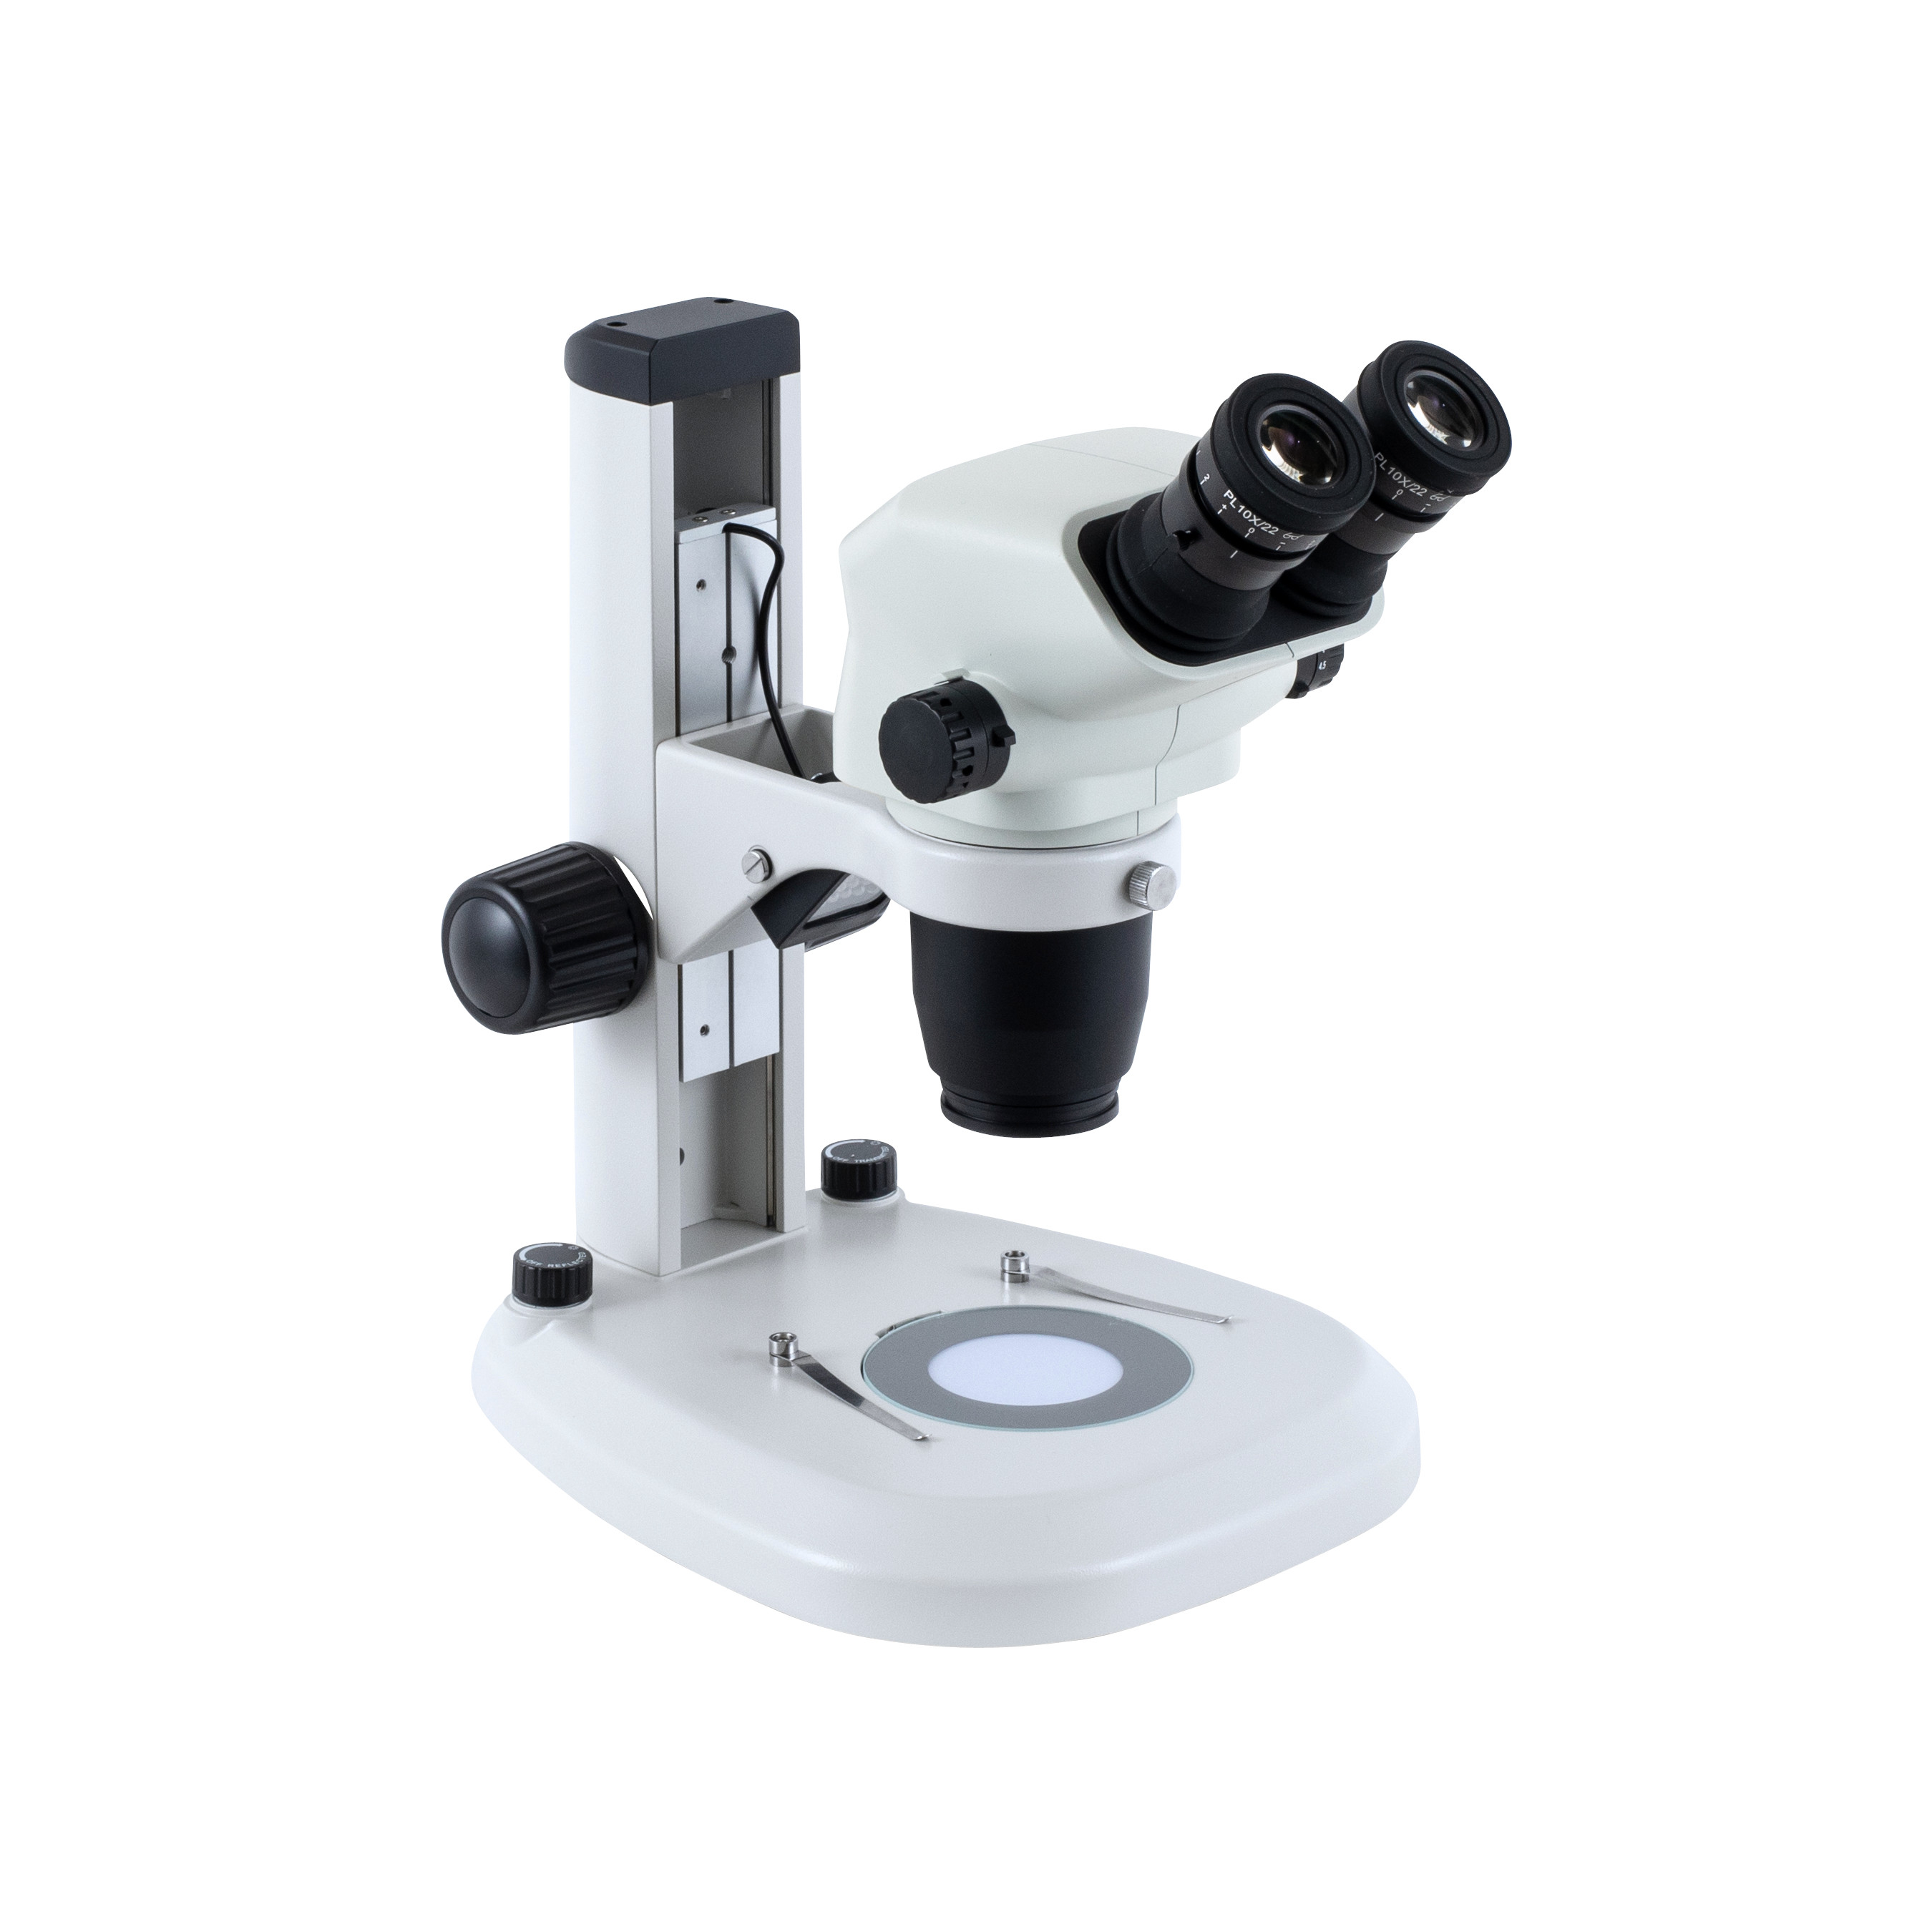 Z645 zoom stereo microscope